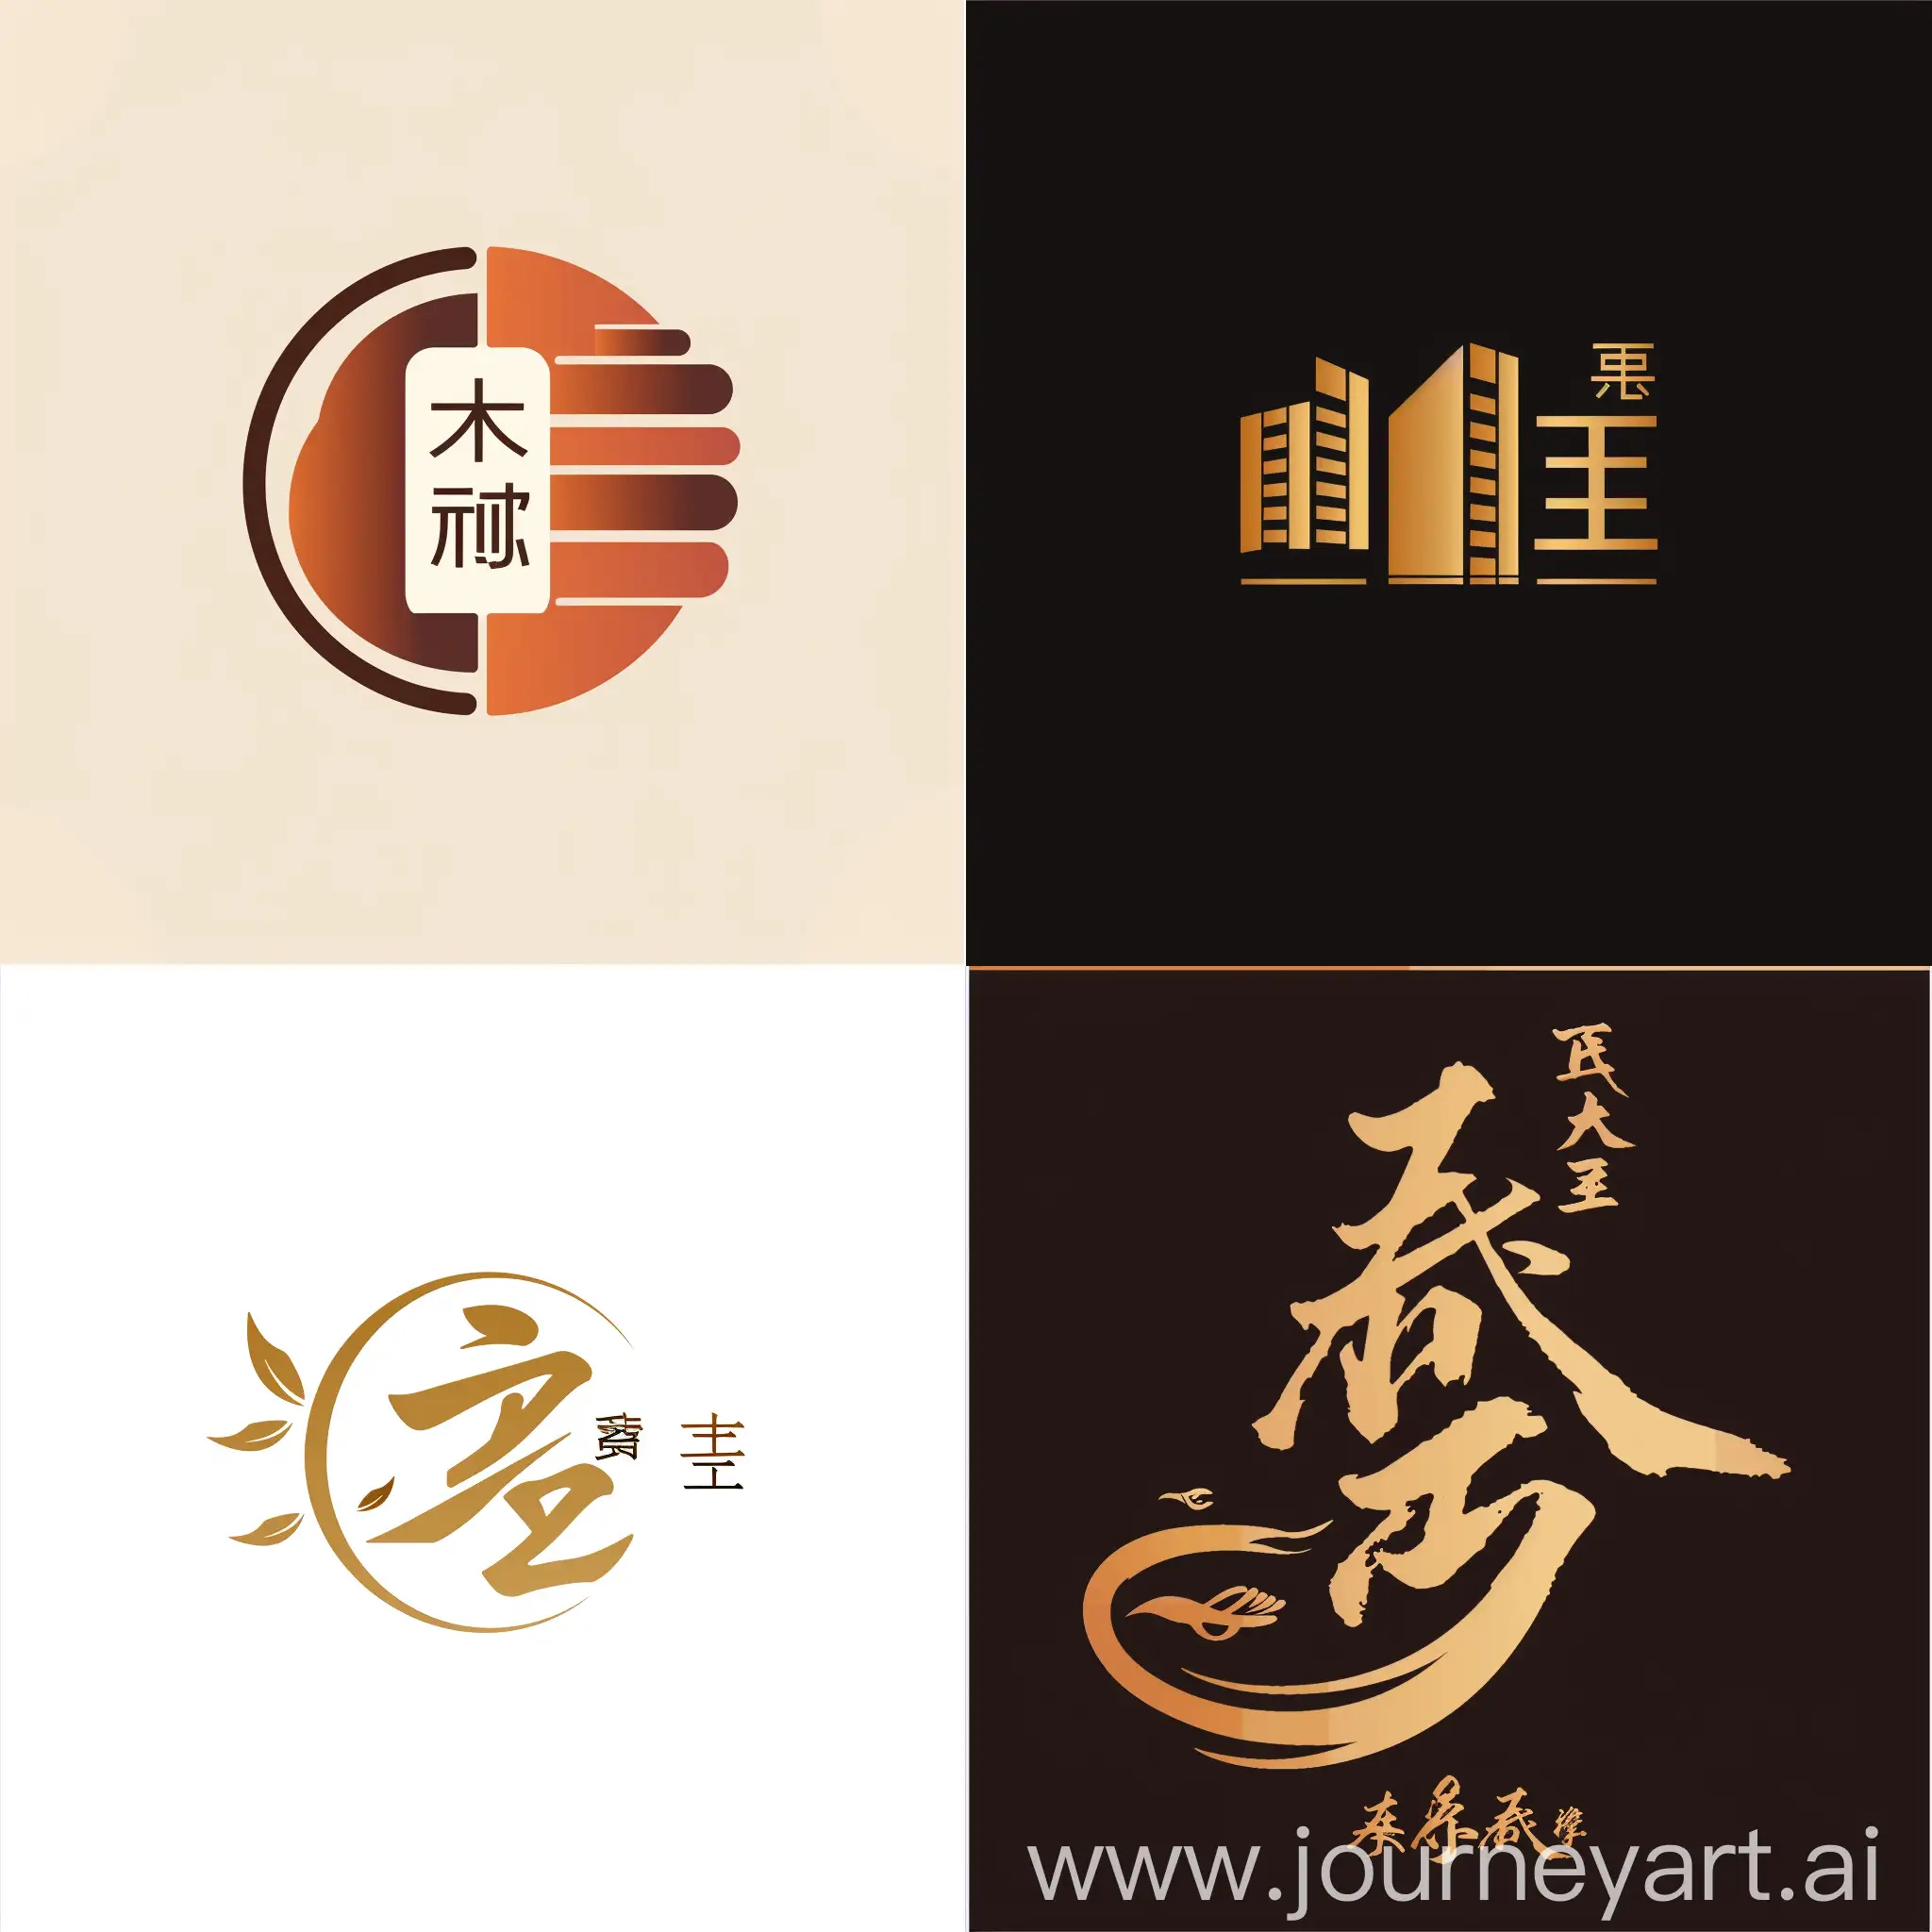 Optitorg-Building-Materials-Company-Logo-Design